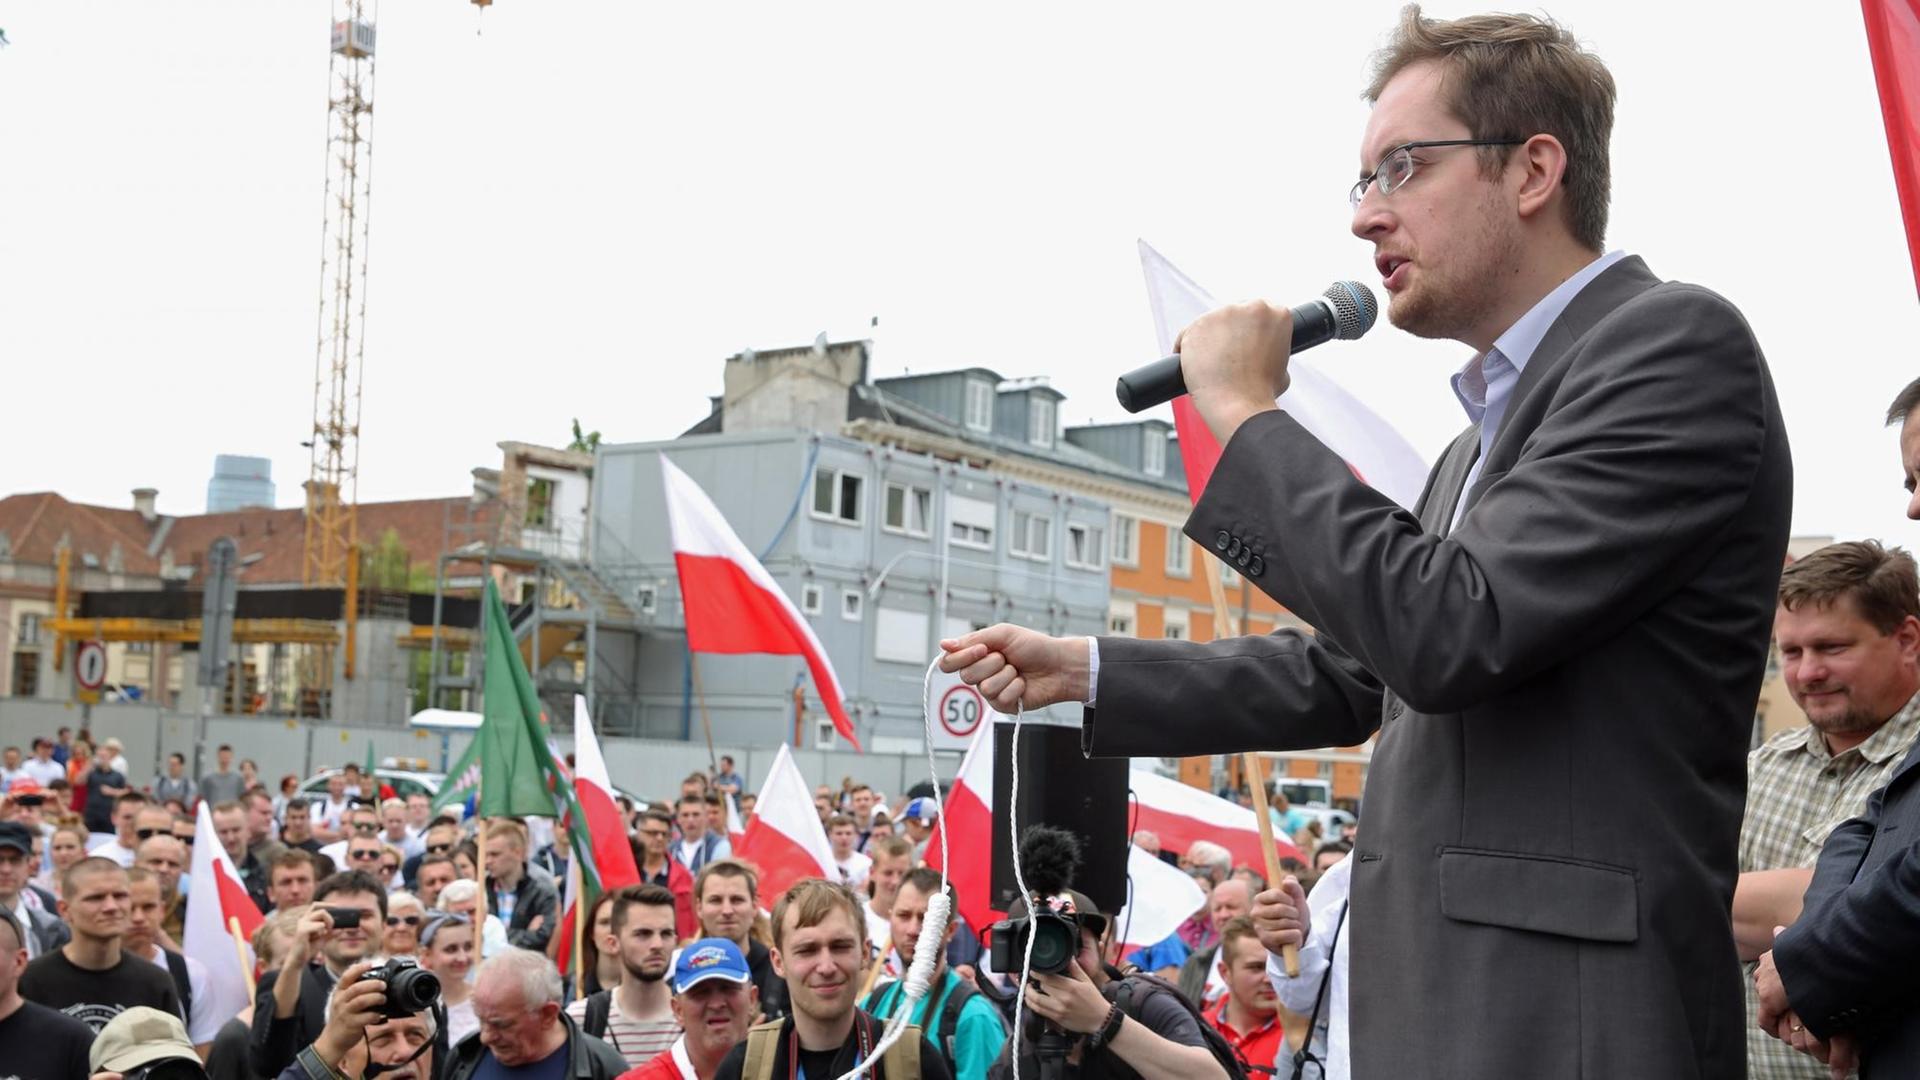 Robert Winnicki von der polnischen, rechtskonservativen "Nationalen Bewegung" spricht auf einer Demo zu einer Menschenmasse, er hält ein zu einem Galgen geknotetes Seil in der Hand.